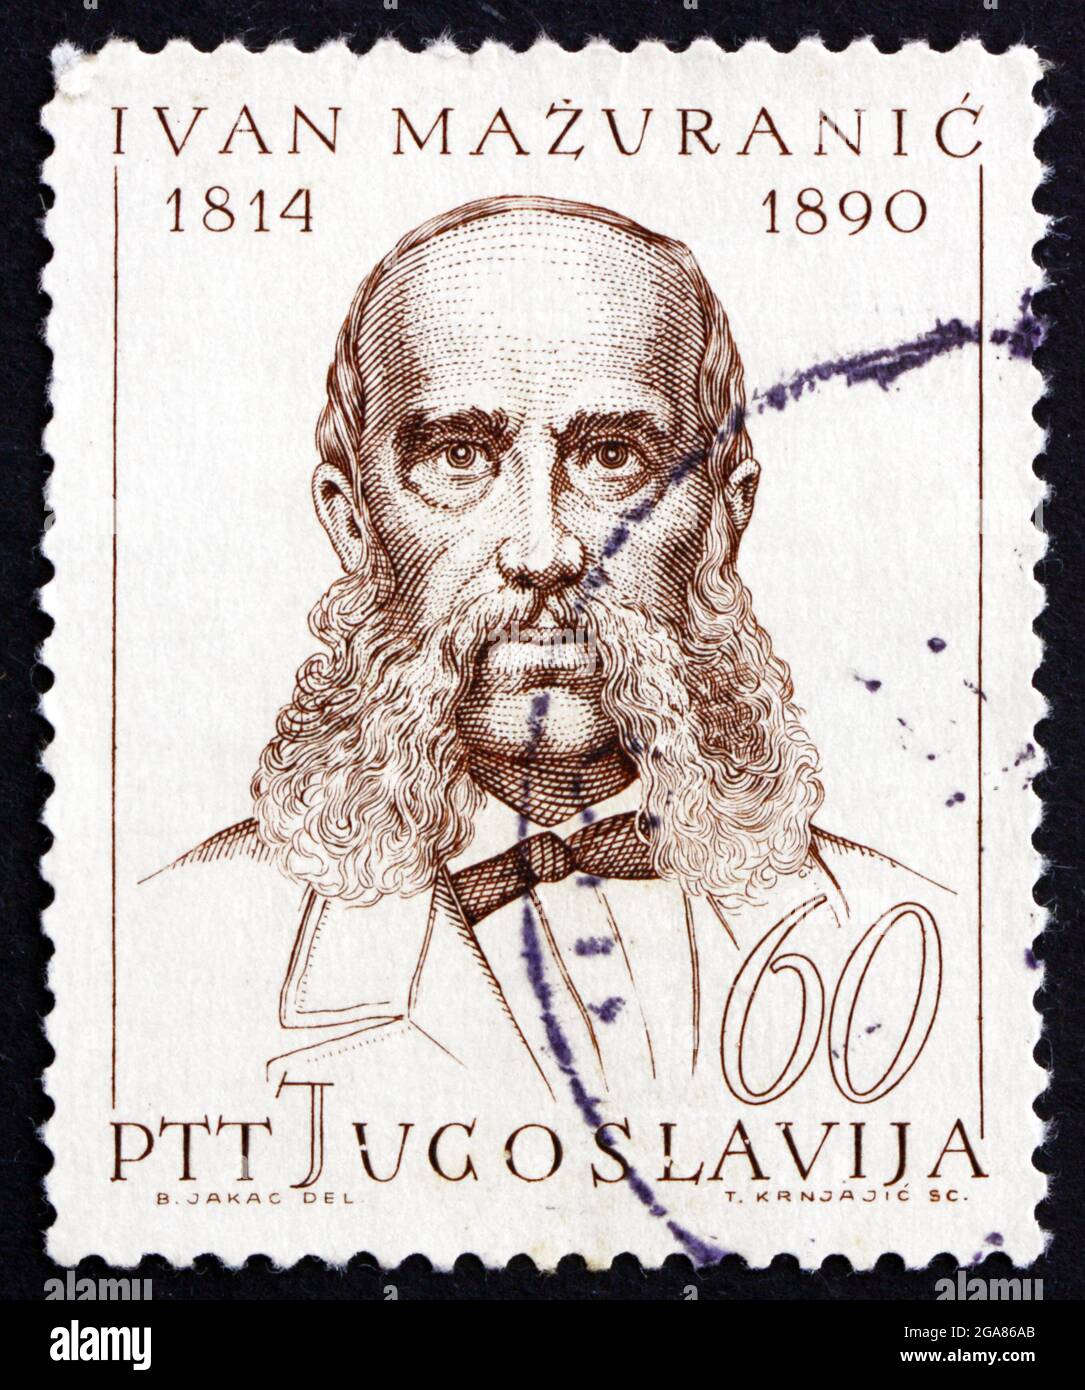 YOUGOSLAVIE - VERS 1965 : un timbre imprimé en Yougoslavie montre Ivan Mazuranic, poète, linguiste, politicien et écrivain, vers 1965 Banque D'Images